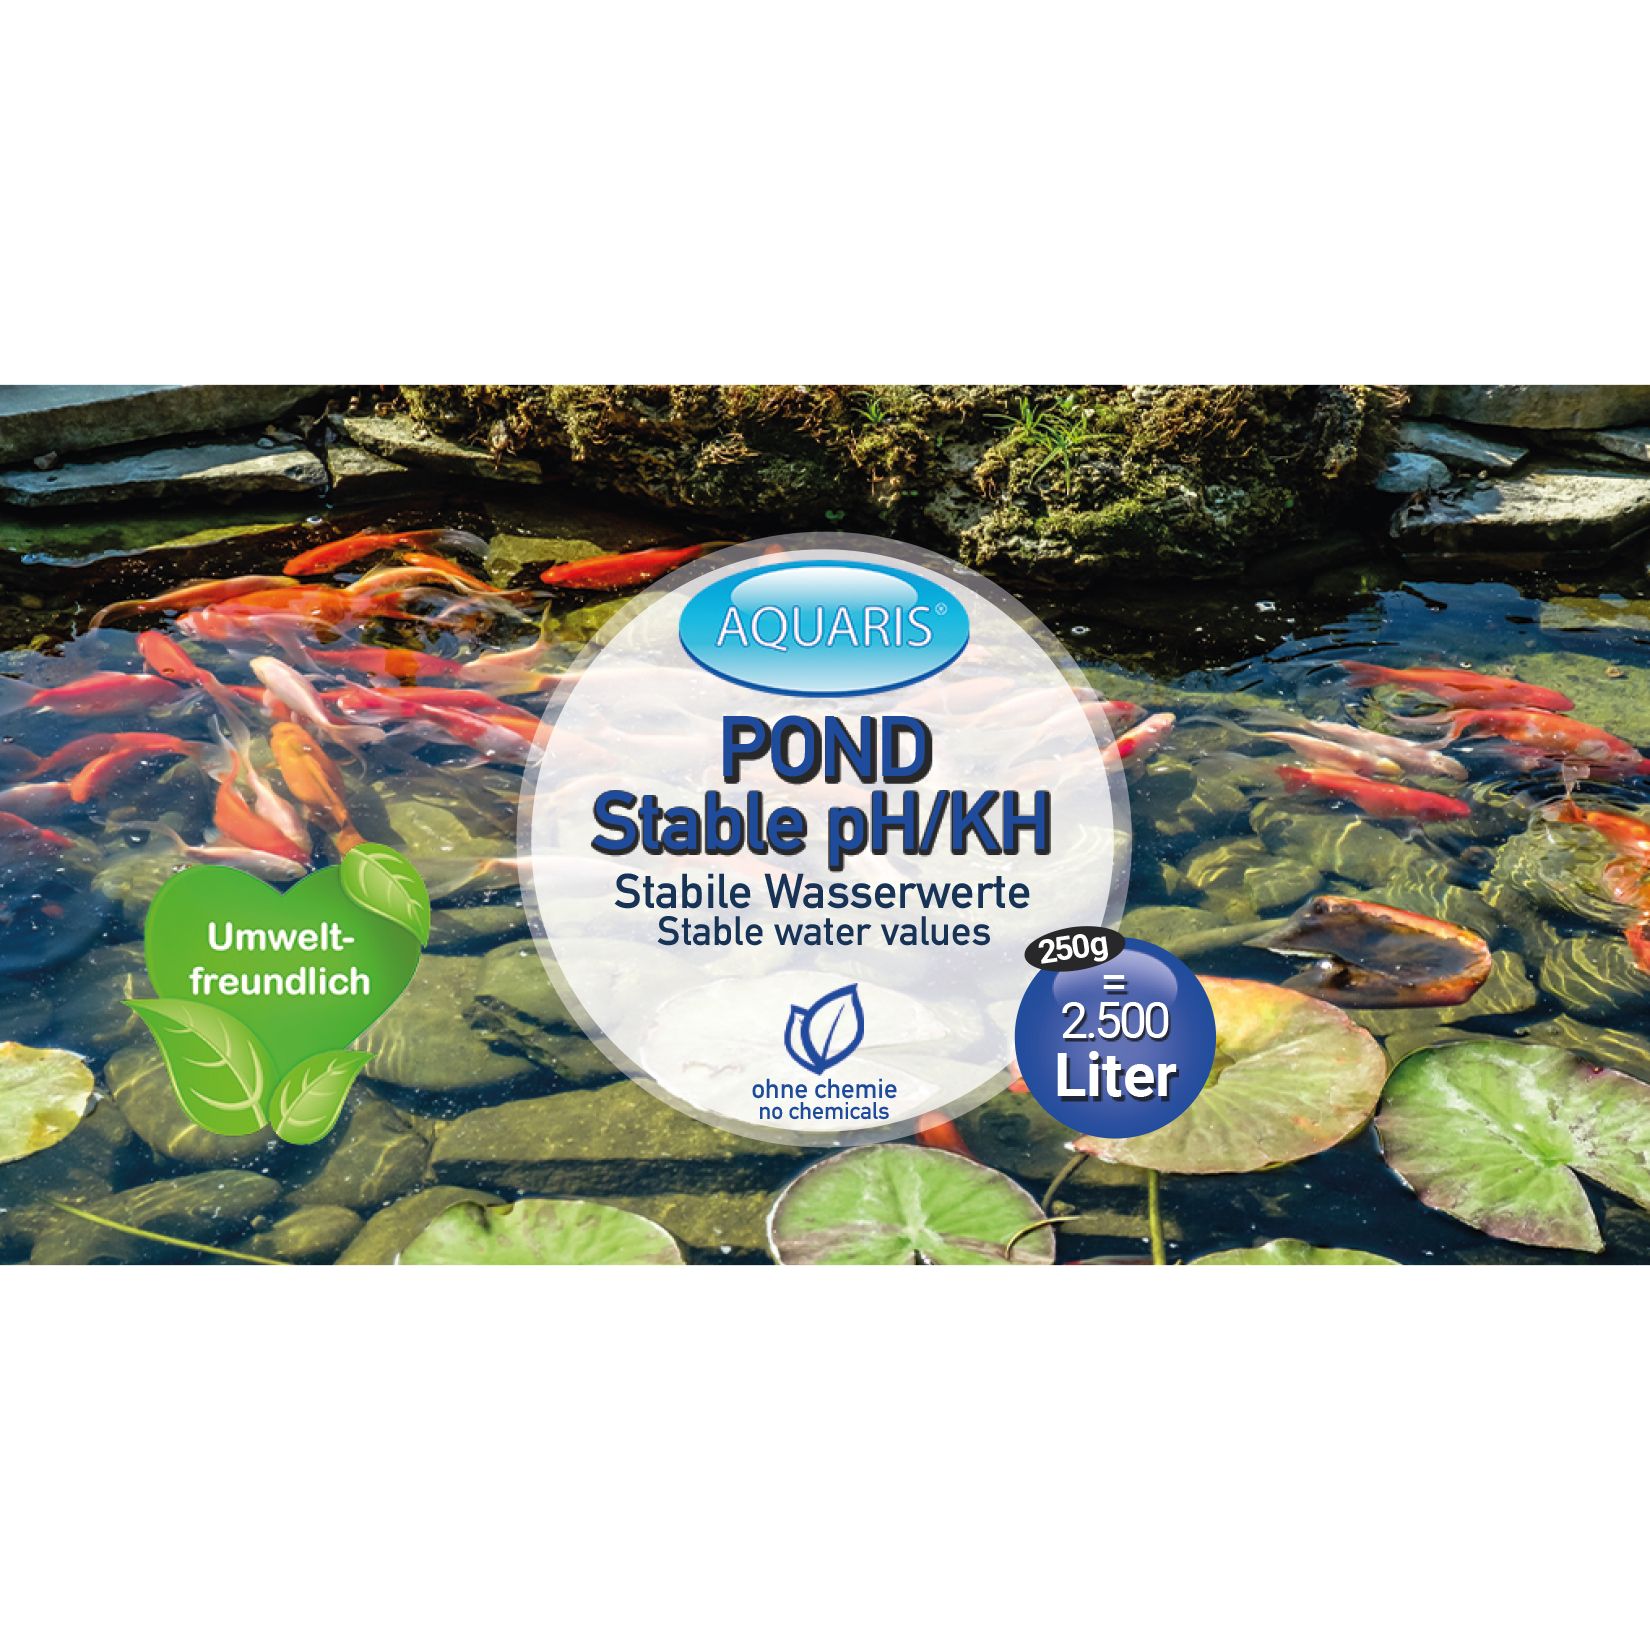 AQUARIS Teichpflege-Produkte für Teichfische - POND Stable pH/KH